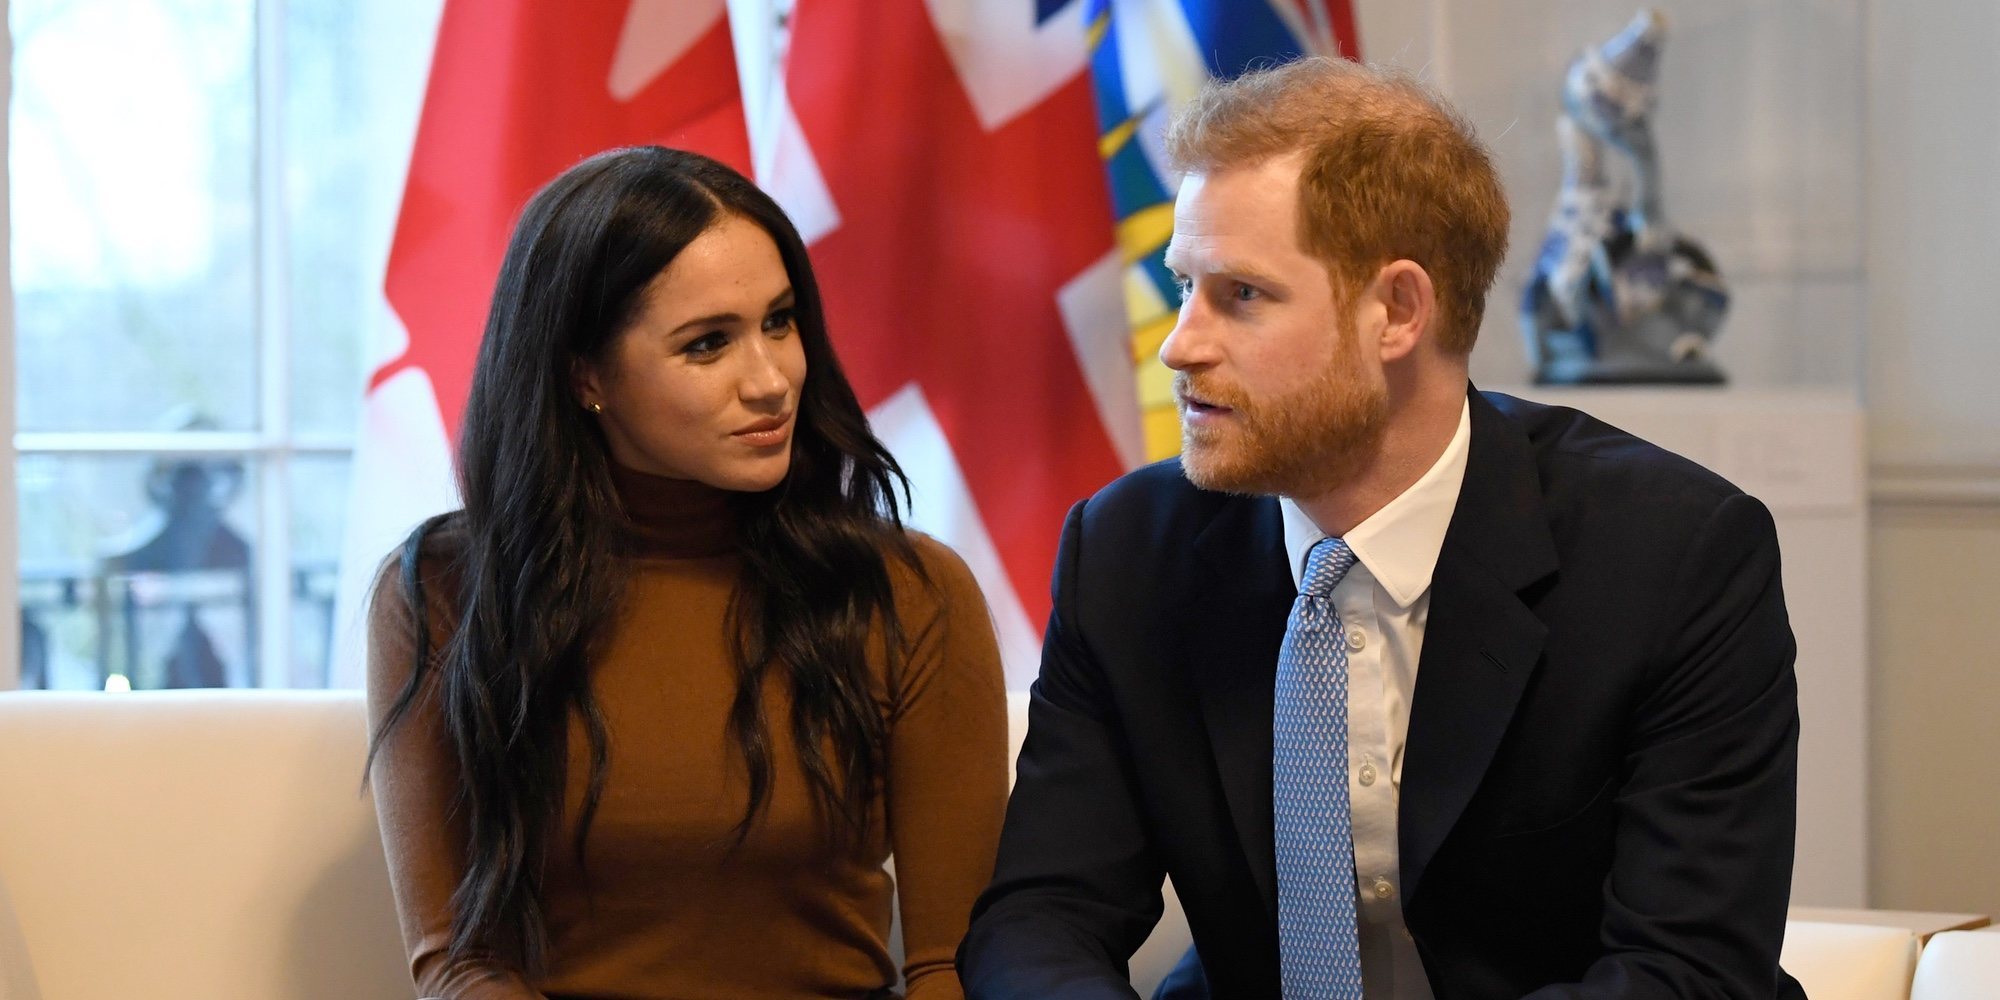 Los planes del Príncipe Harry y Meghan Markle que les acercan a la Familia Real Británica